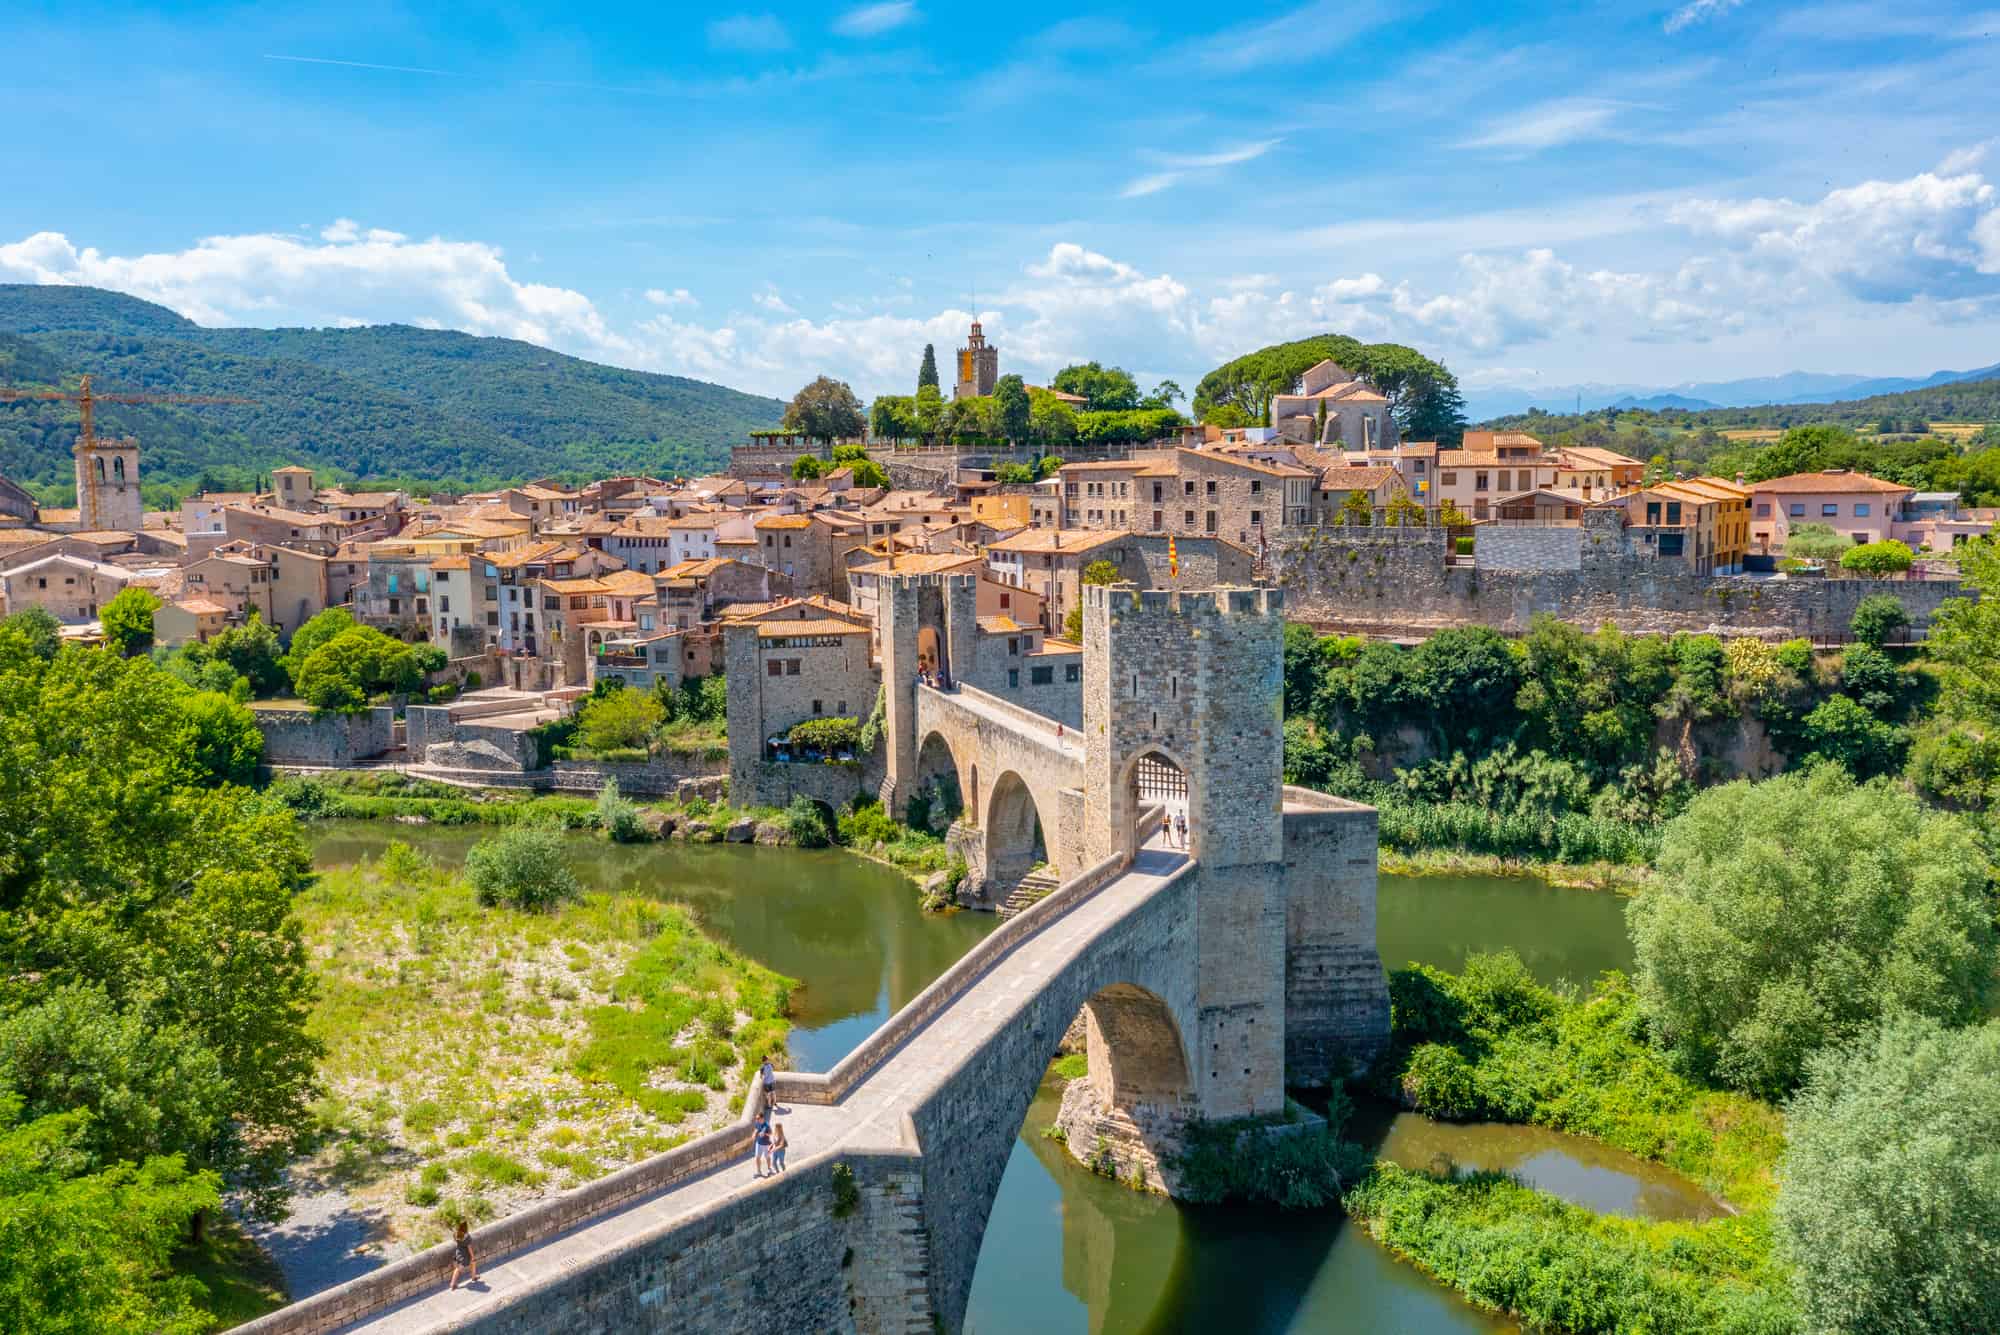 Medieval bridge in Spanish town Besalu